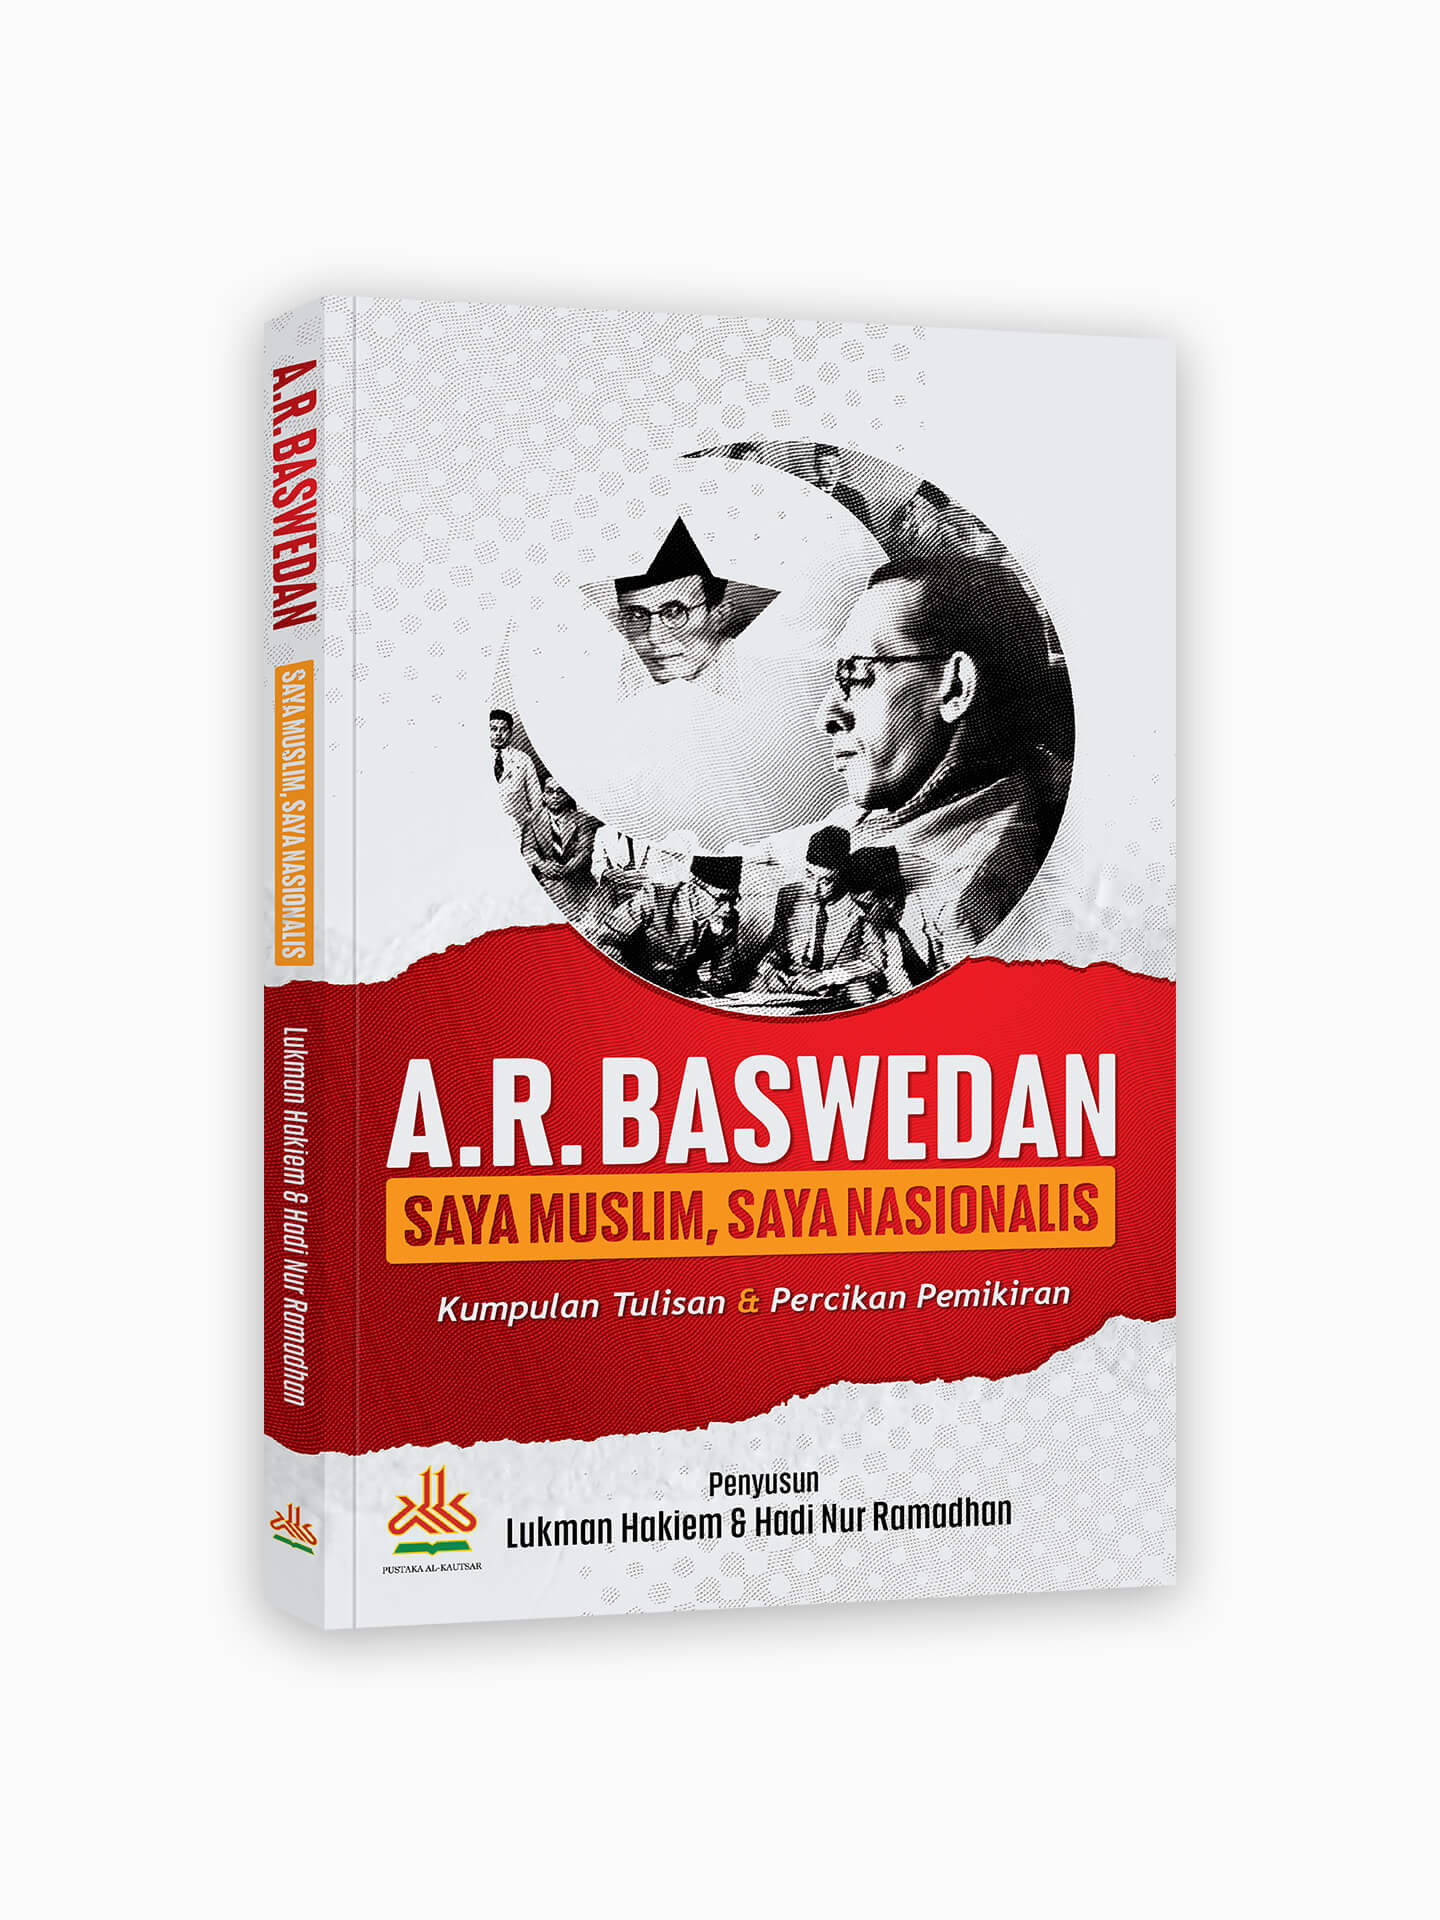 A.R. Baswedan : Saya Muslim Saya Nasionalis